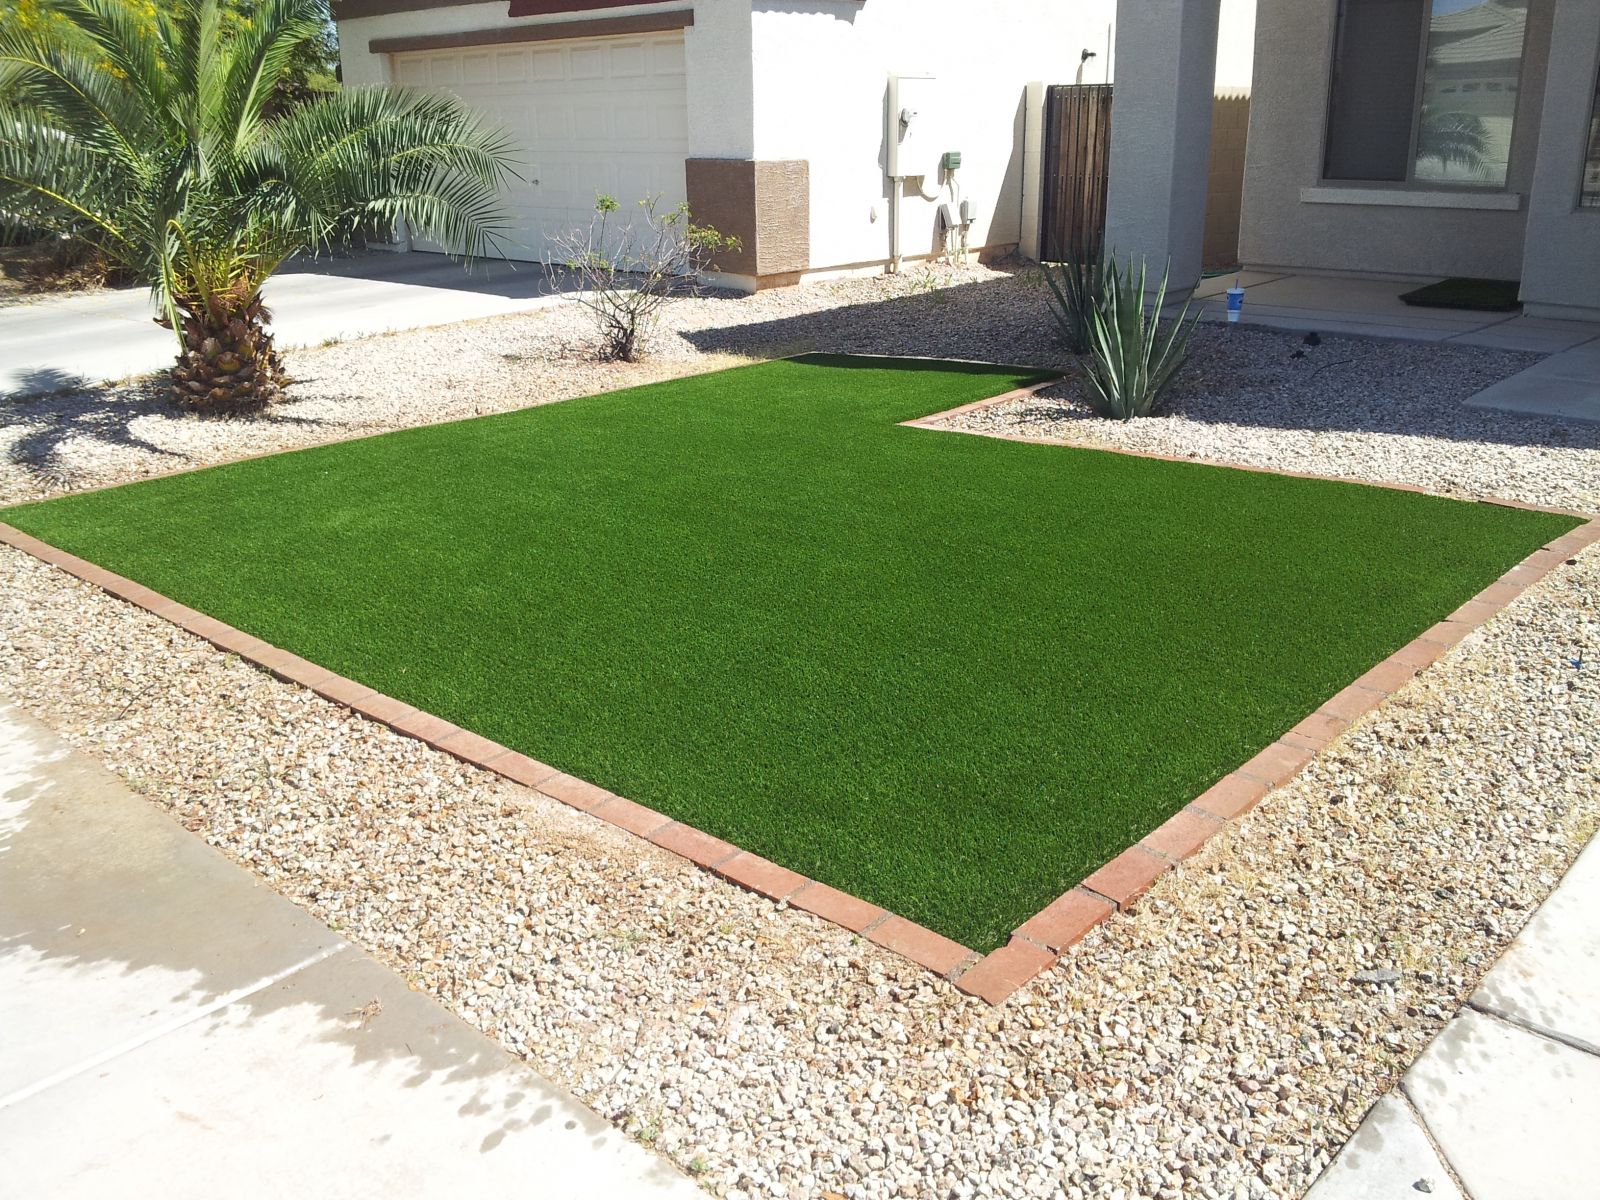 Chandler Artificial Grass